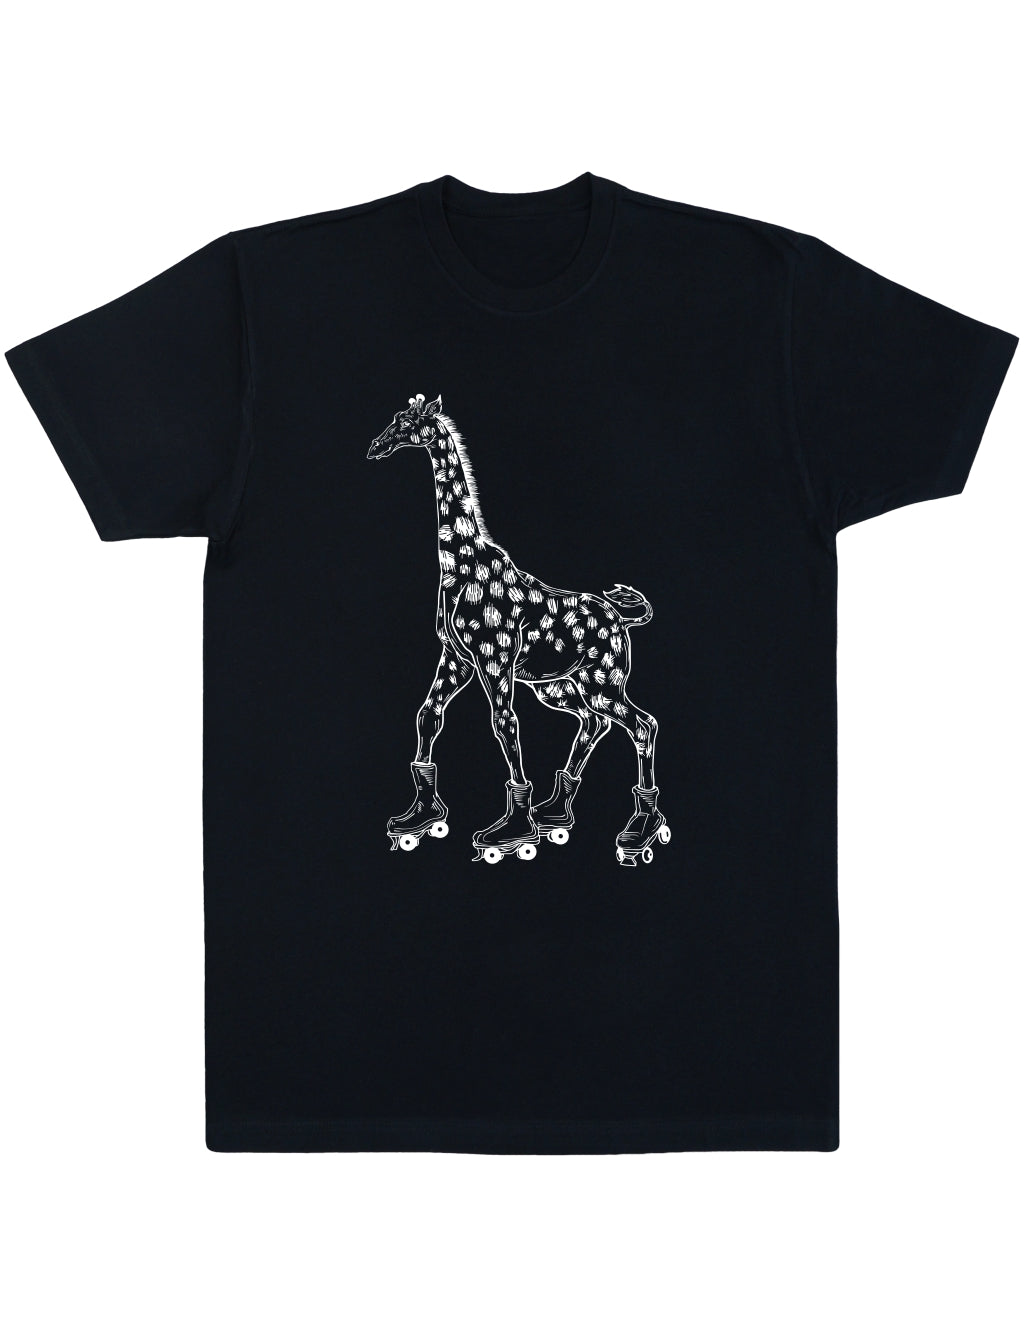 SEEMBO Giraffe Skater Skating Roller Skates Men's Cotton T-Shirt